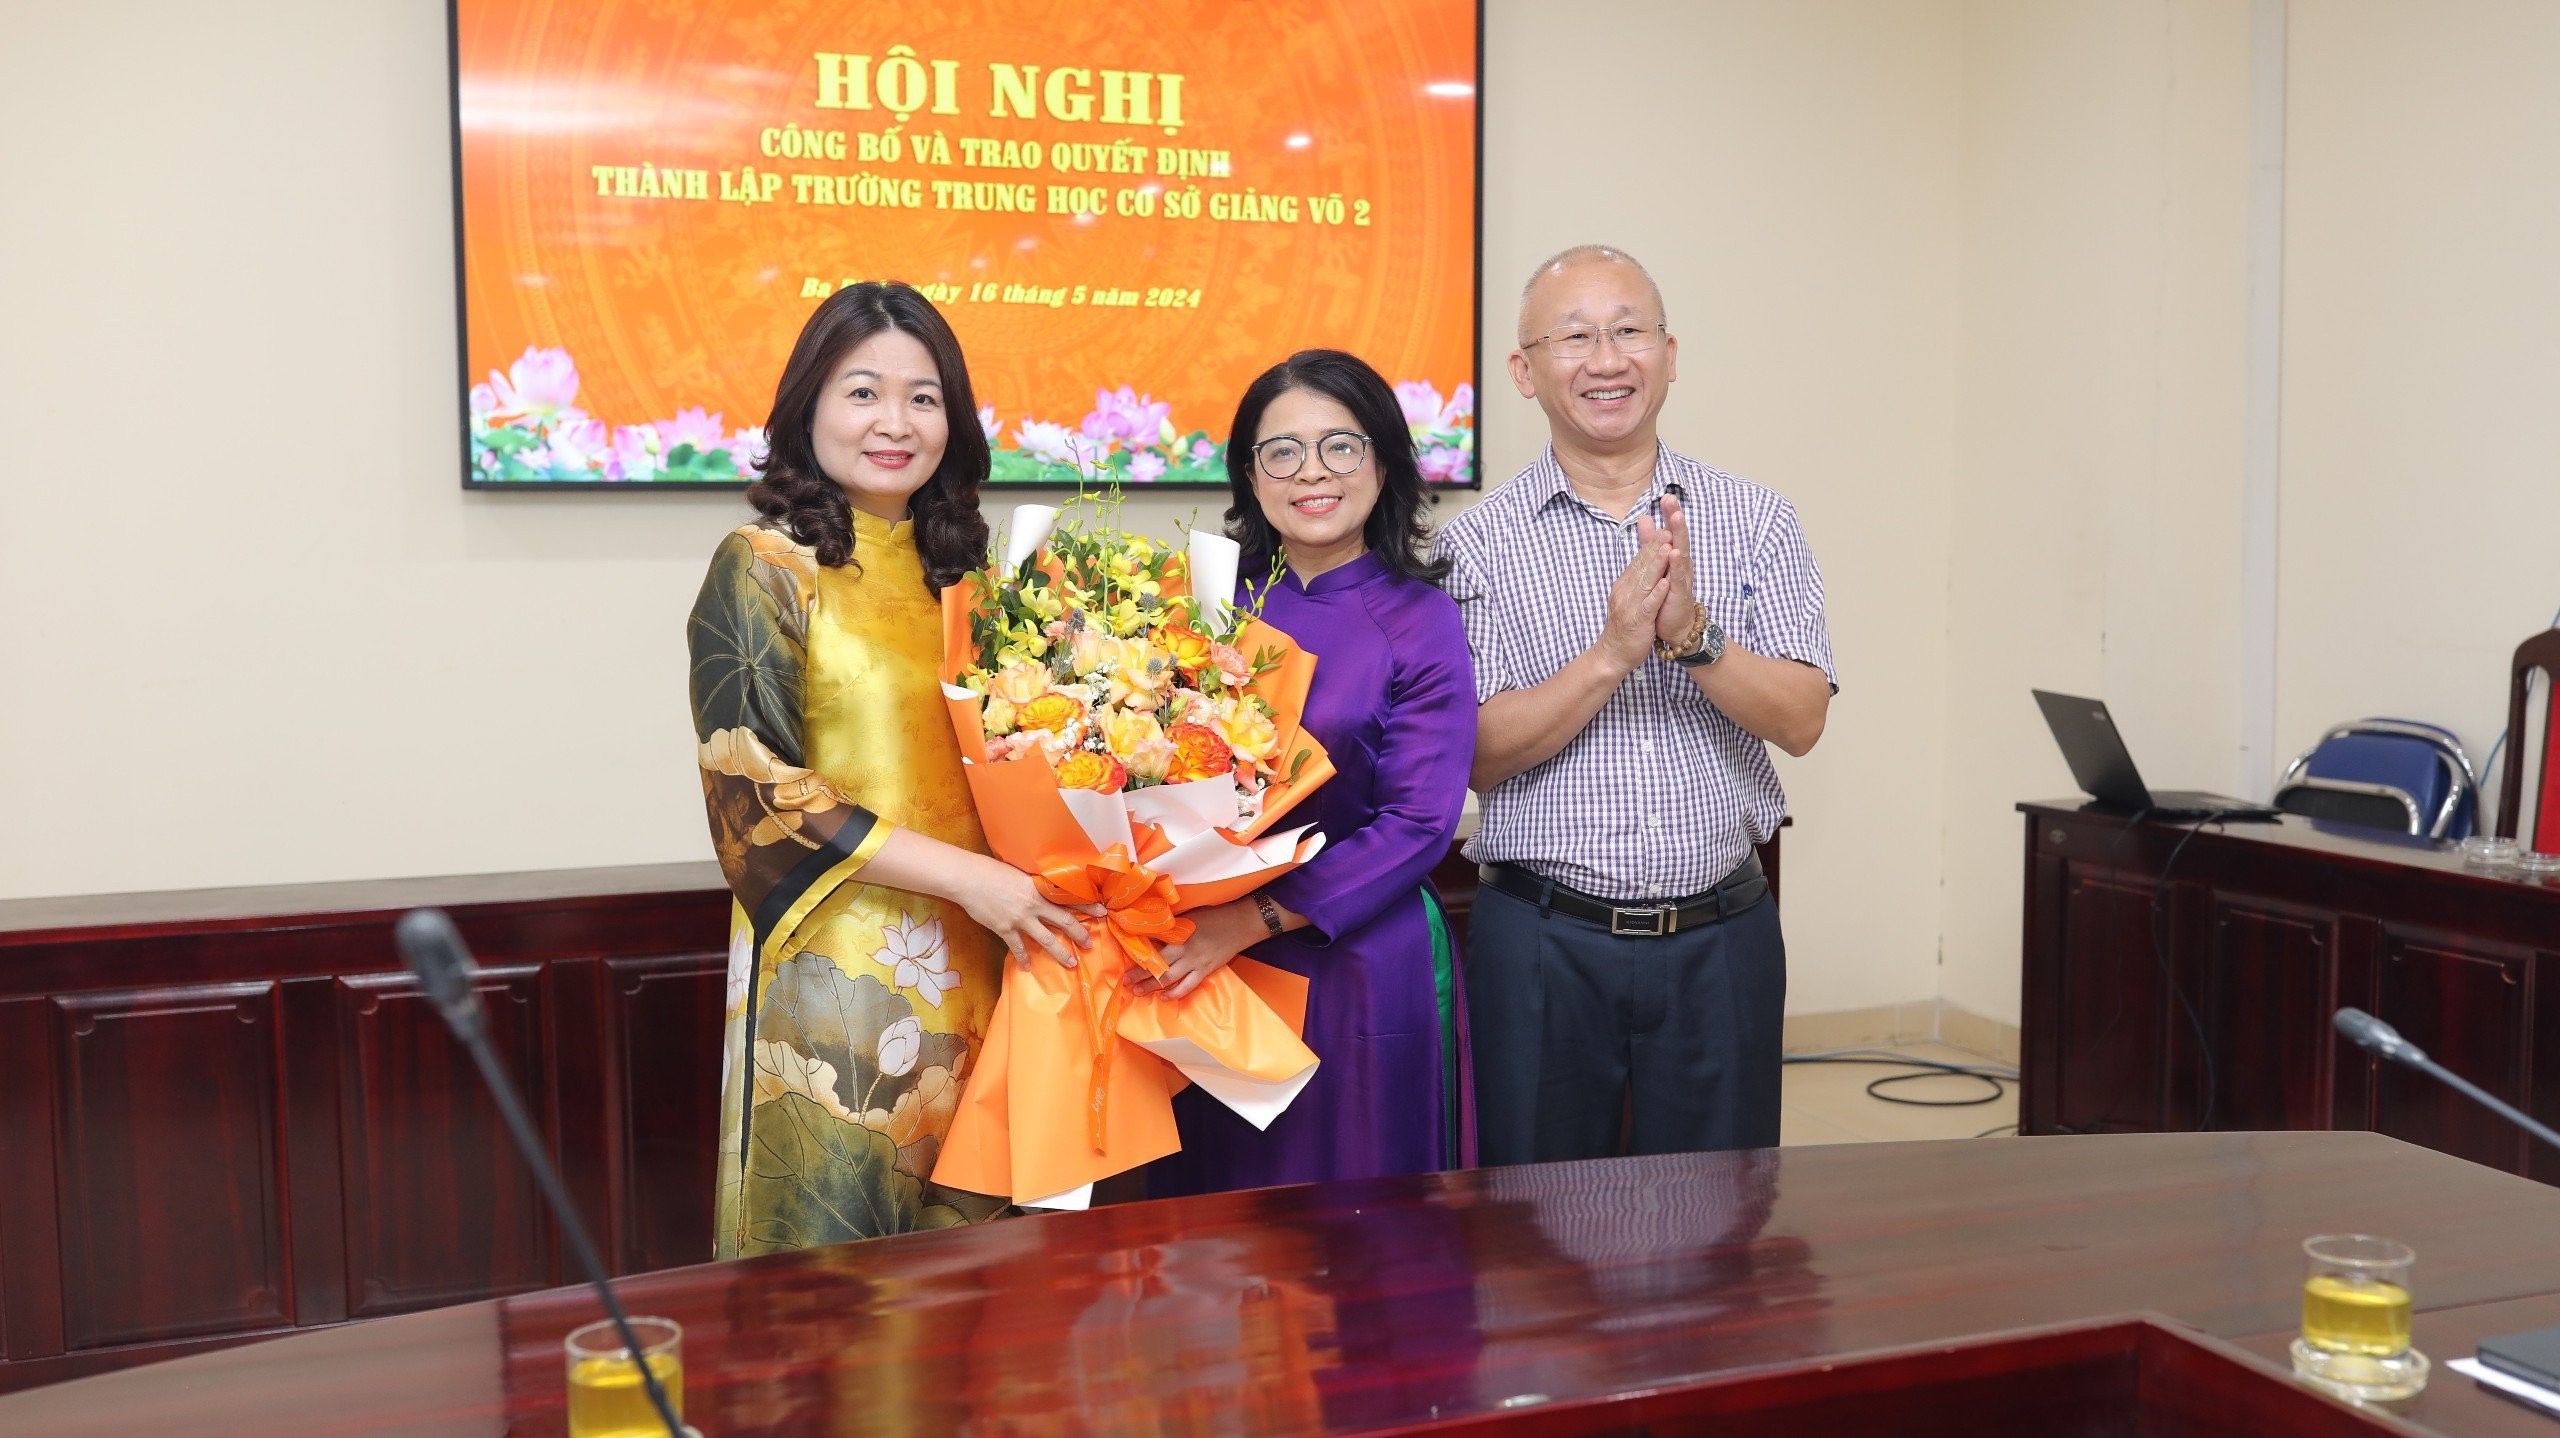 Nhà giáo Nguyễn Thị Hương Giang được ngành Giáo dục quận Ba Đình giao nhiệm vụ Hiệu trưởng trường THCS Giảng Võ 2.